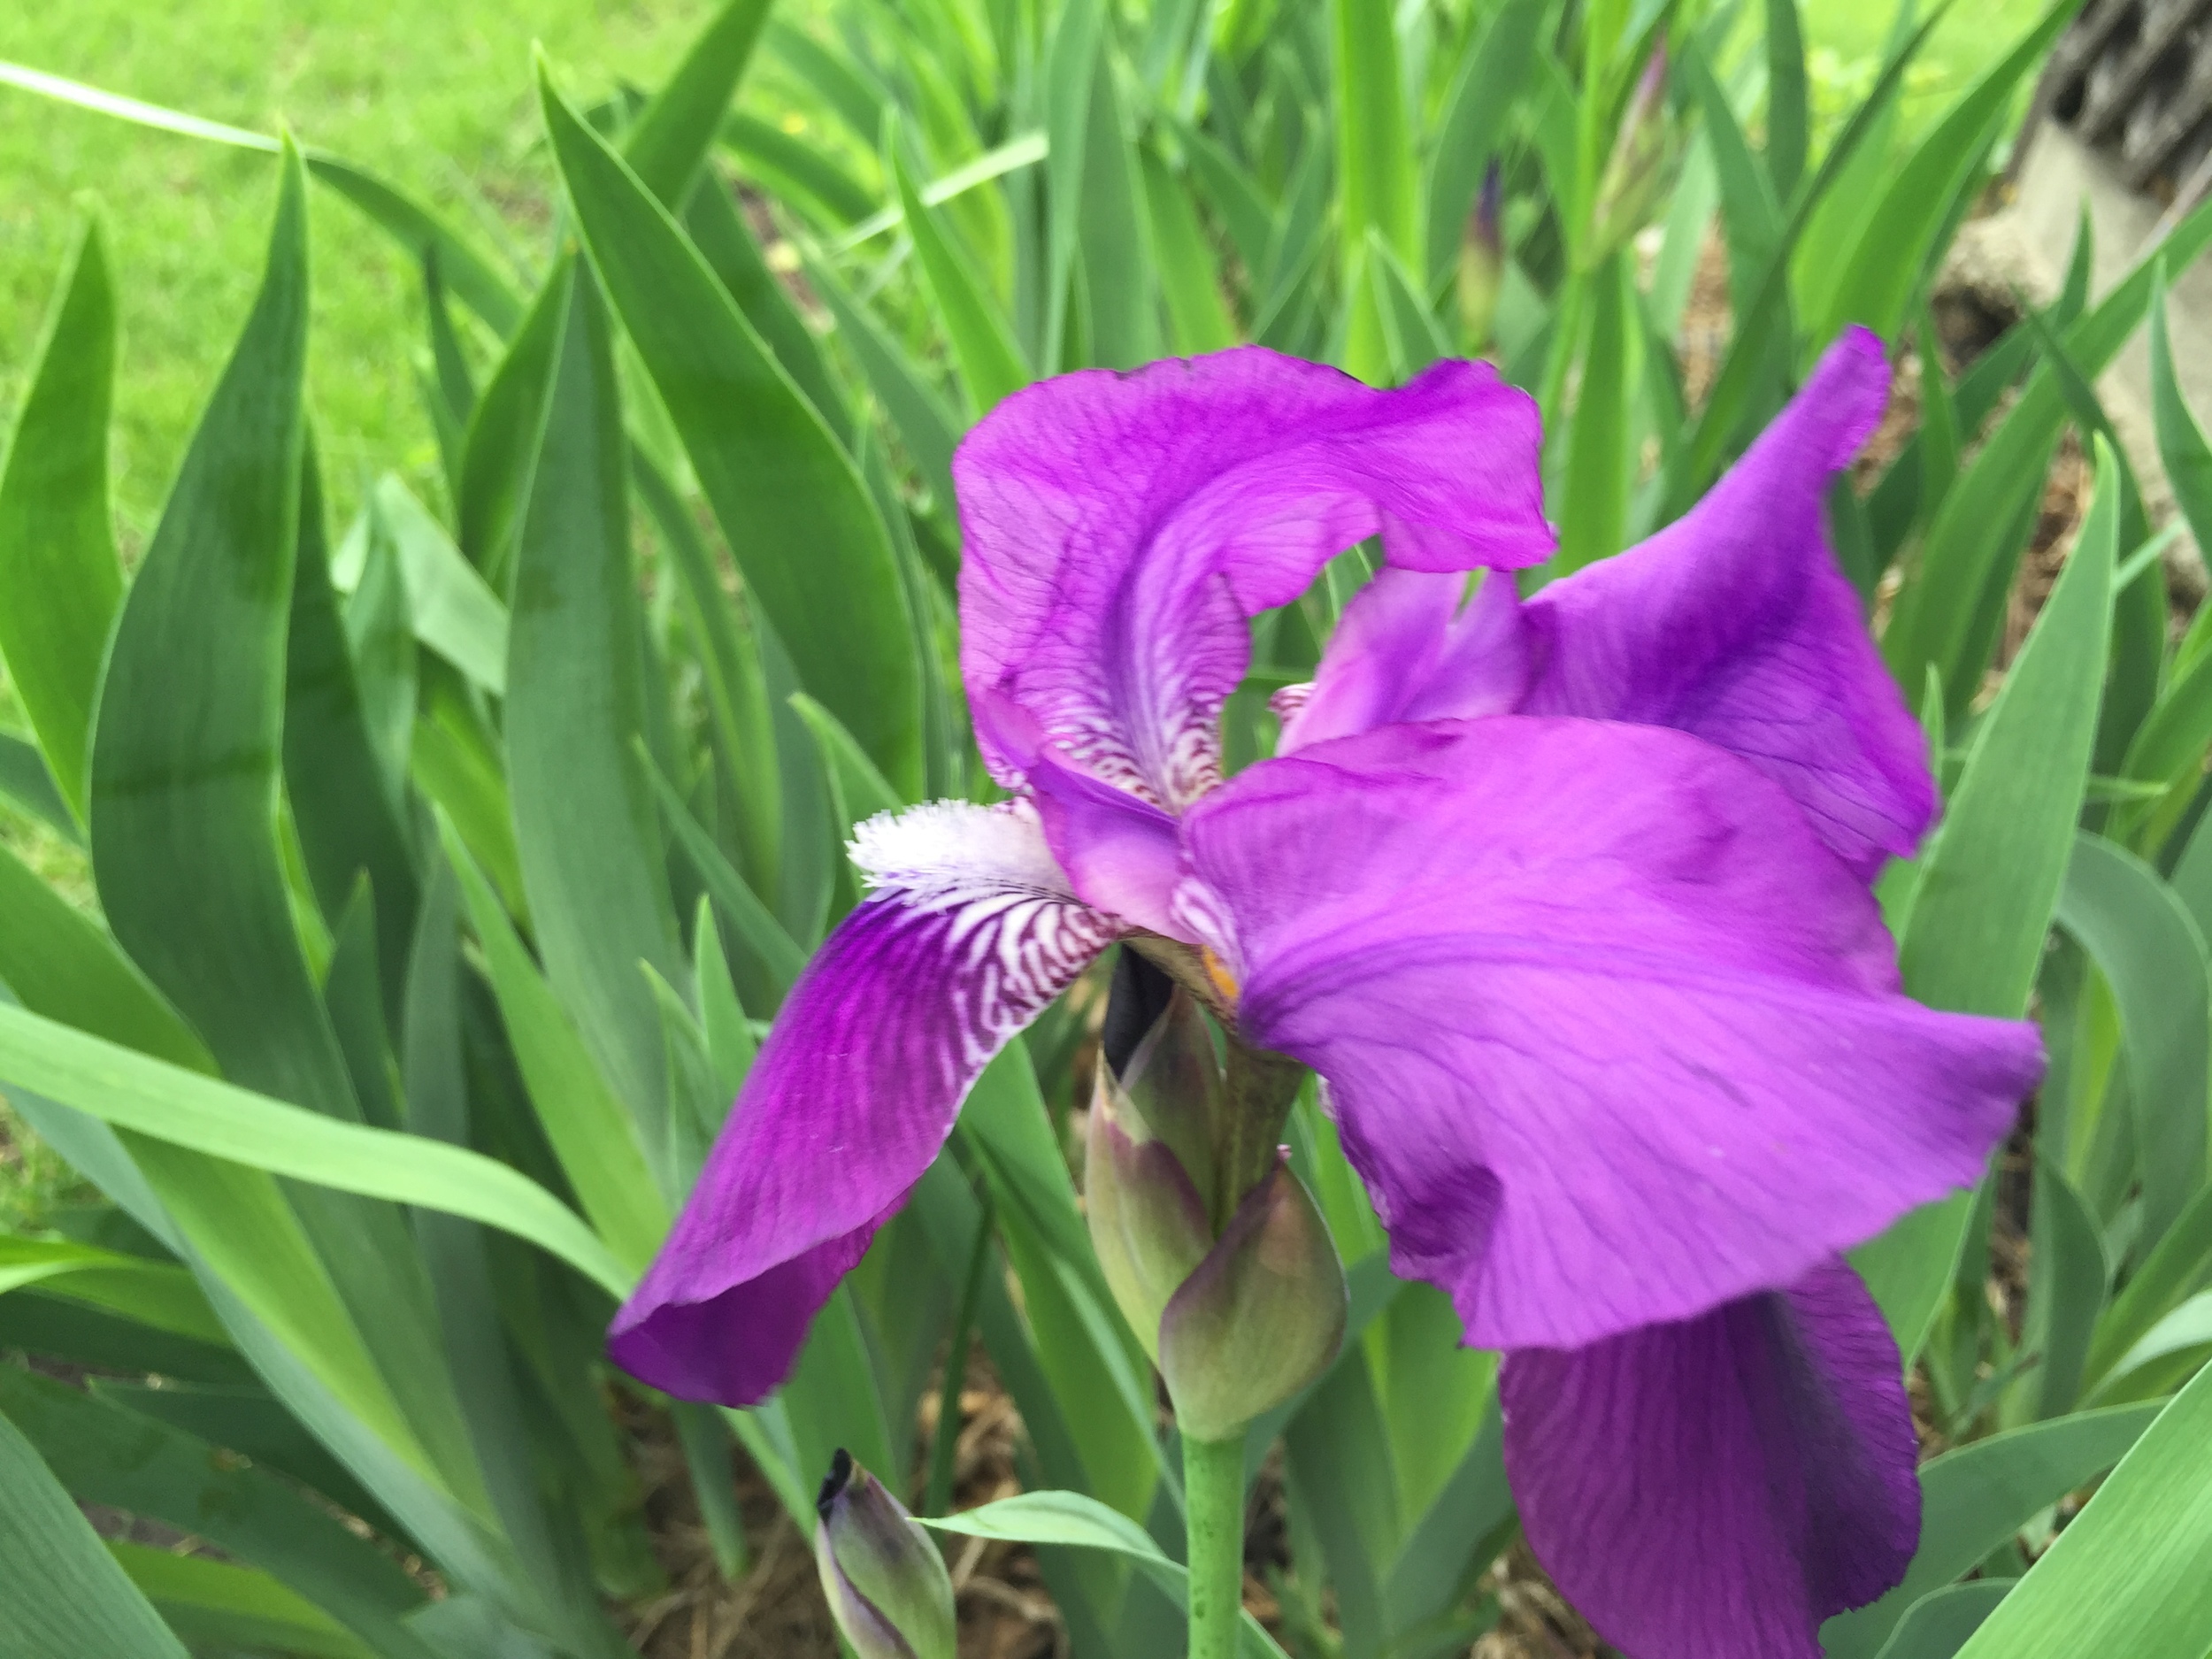  This iris is quite nice. 